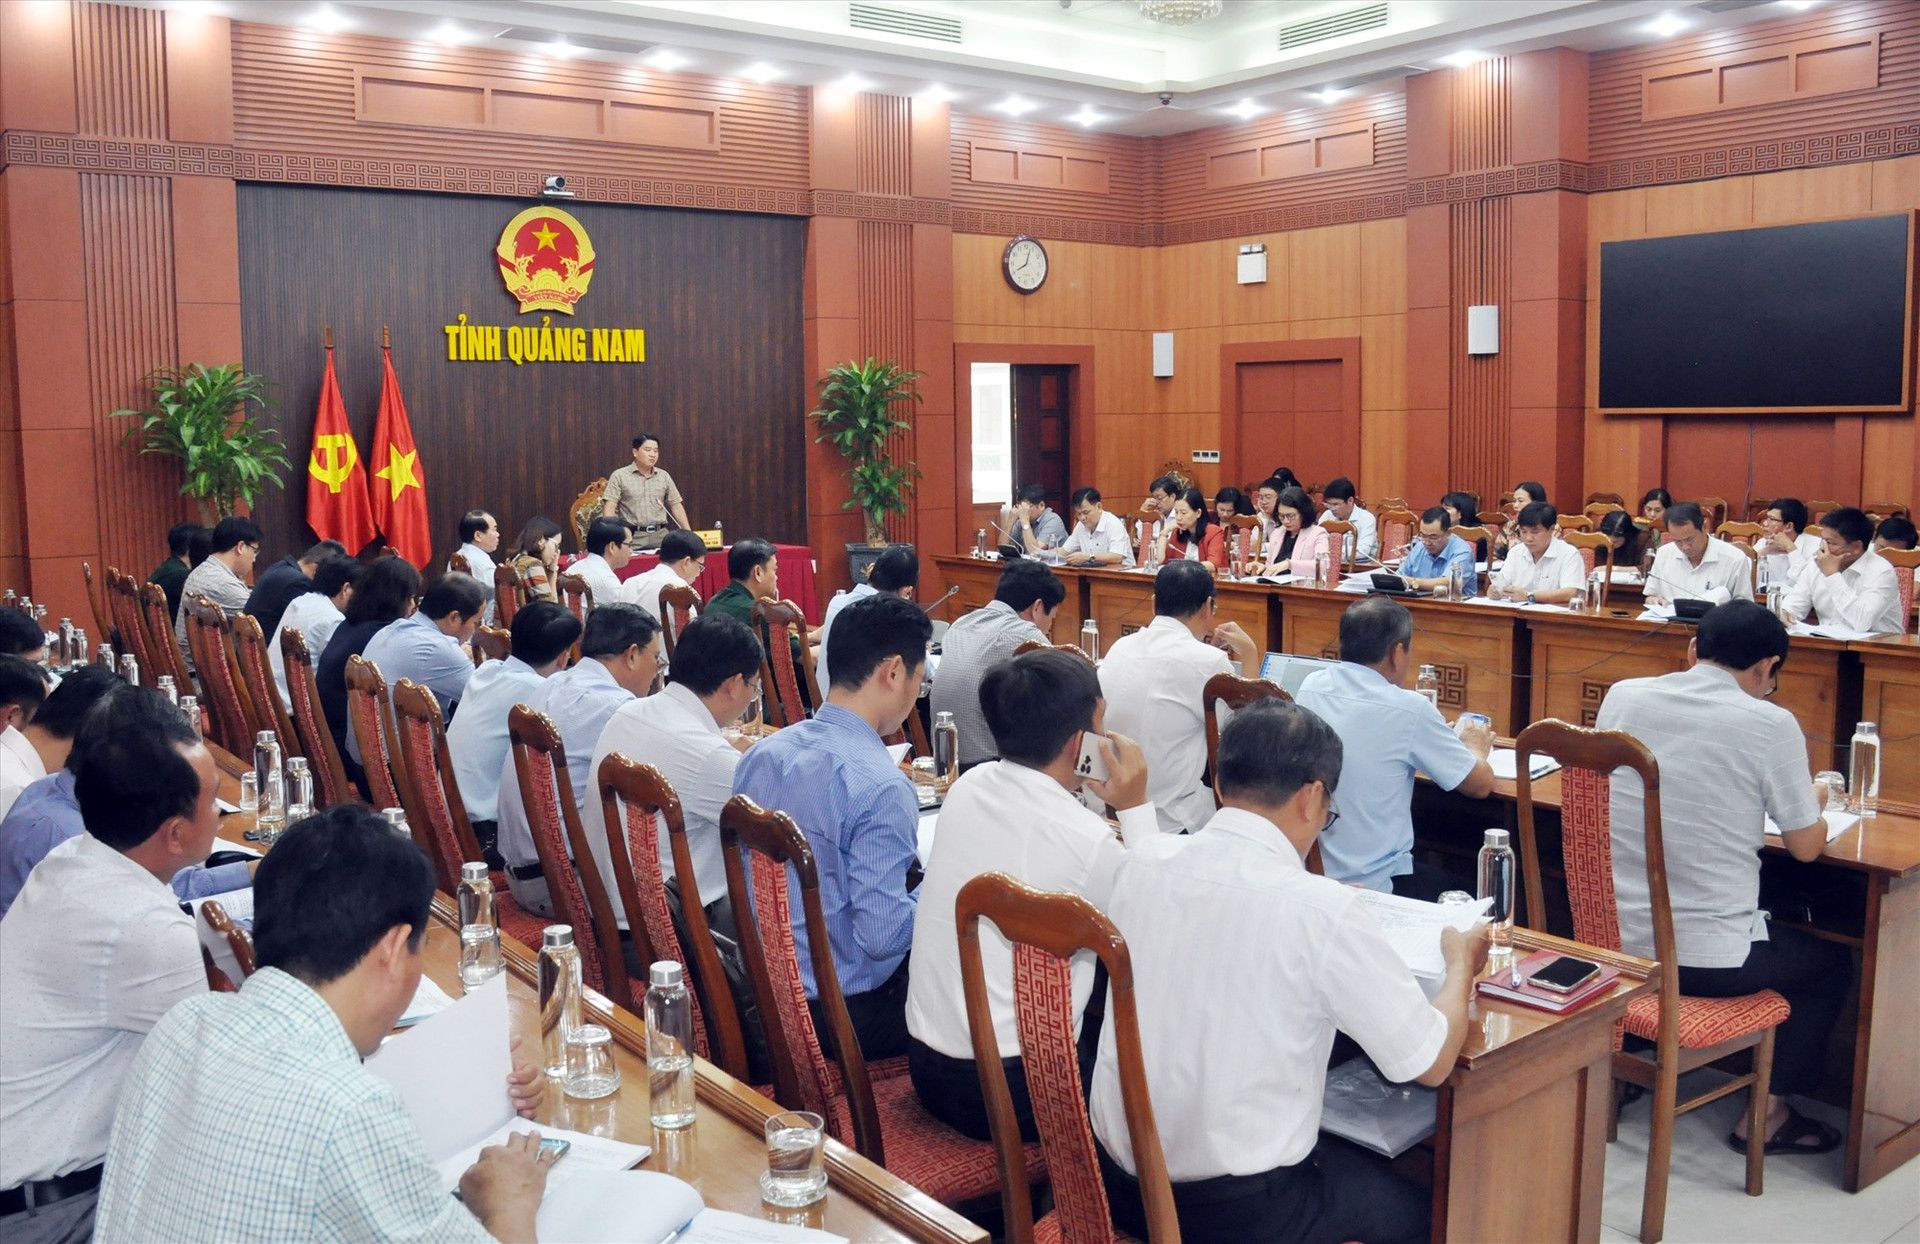 Phó Chủ tịch UBND tỉnh Trần Văn Tân chủ trì cuộc họp với các ngành, địa phương bàn kế hoạch thi tuyển biên chế công chức, viên chức năm 2022, dự kiến tổ chức trong tháng 12/2022. Ảnh: N.Đ